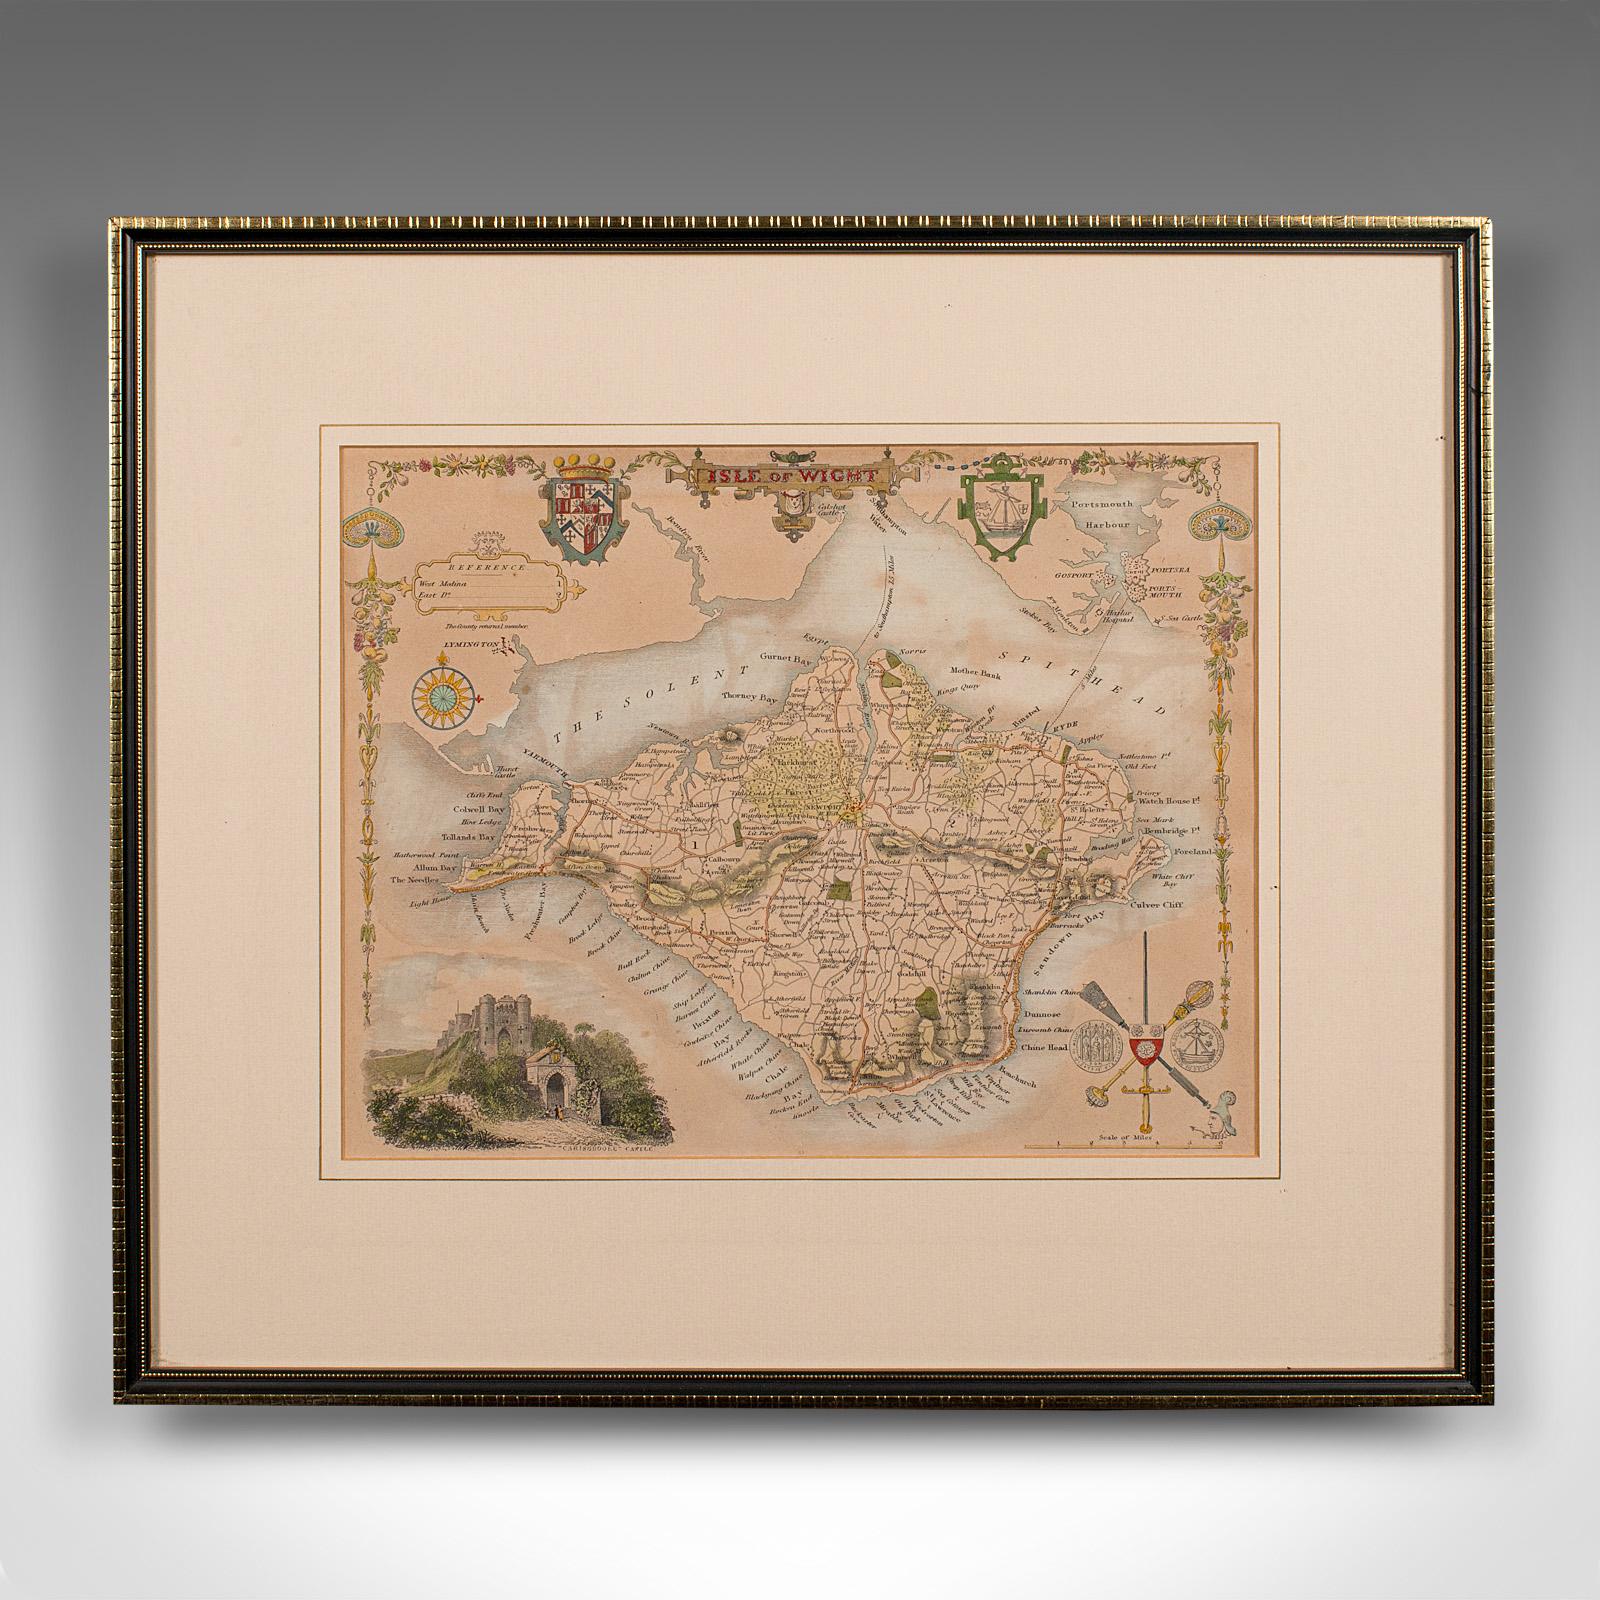 Dies ist eine antike lithografische Karte der Isle of Wight. Ein englischer, gerahmter Atlasstich von kartografischem Interesse aus dem frühen 19. Jahrhundert und später.

Hervorragende Lithografie der Insel und ihrer Grafschaft, perfekt für die